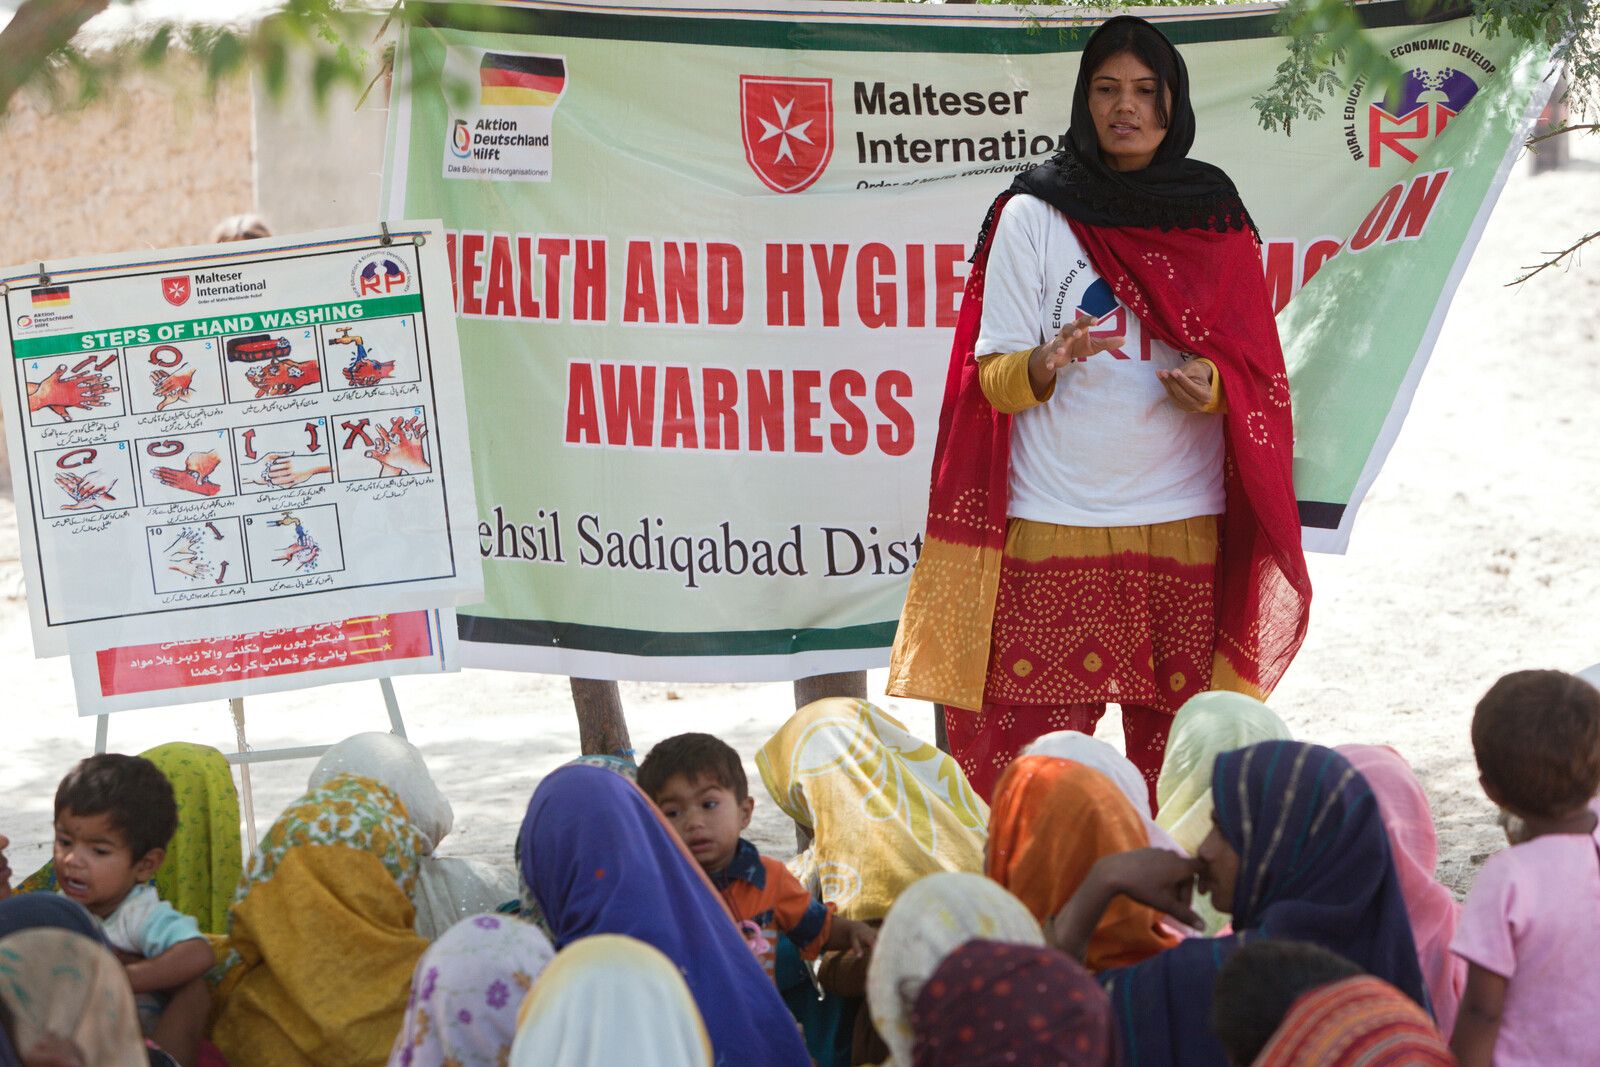 Das richtige Verhalten im Hinblick auf Hygiene kann Krankheiten verhindern. Eine Frau schult in Pakistan andere, um das Wissen weiterzugeben.